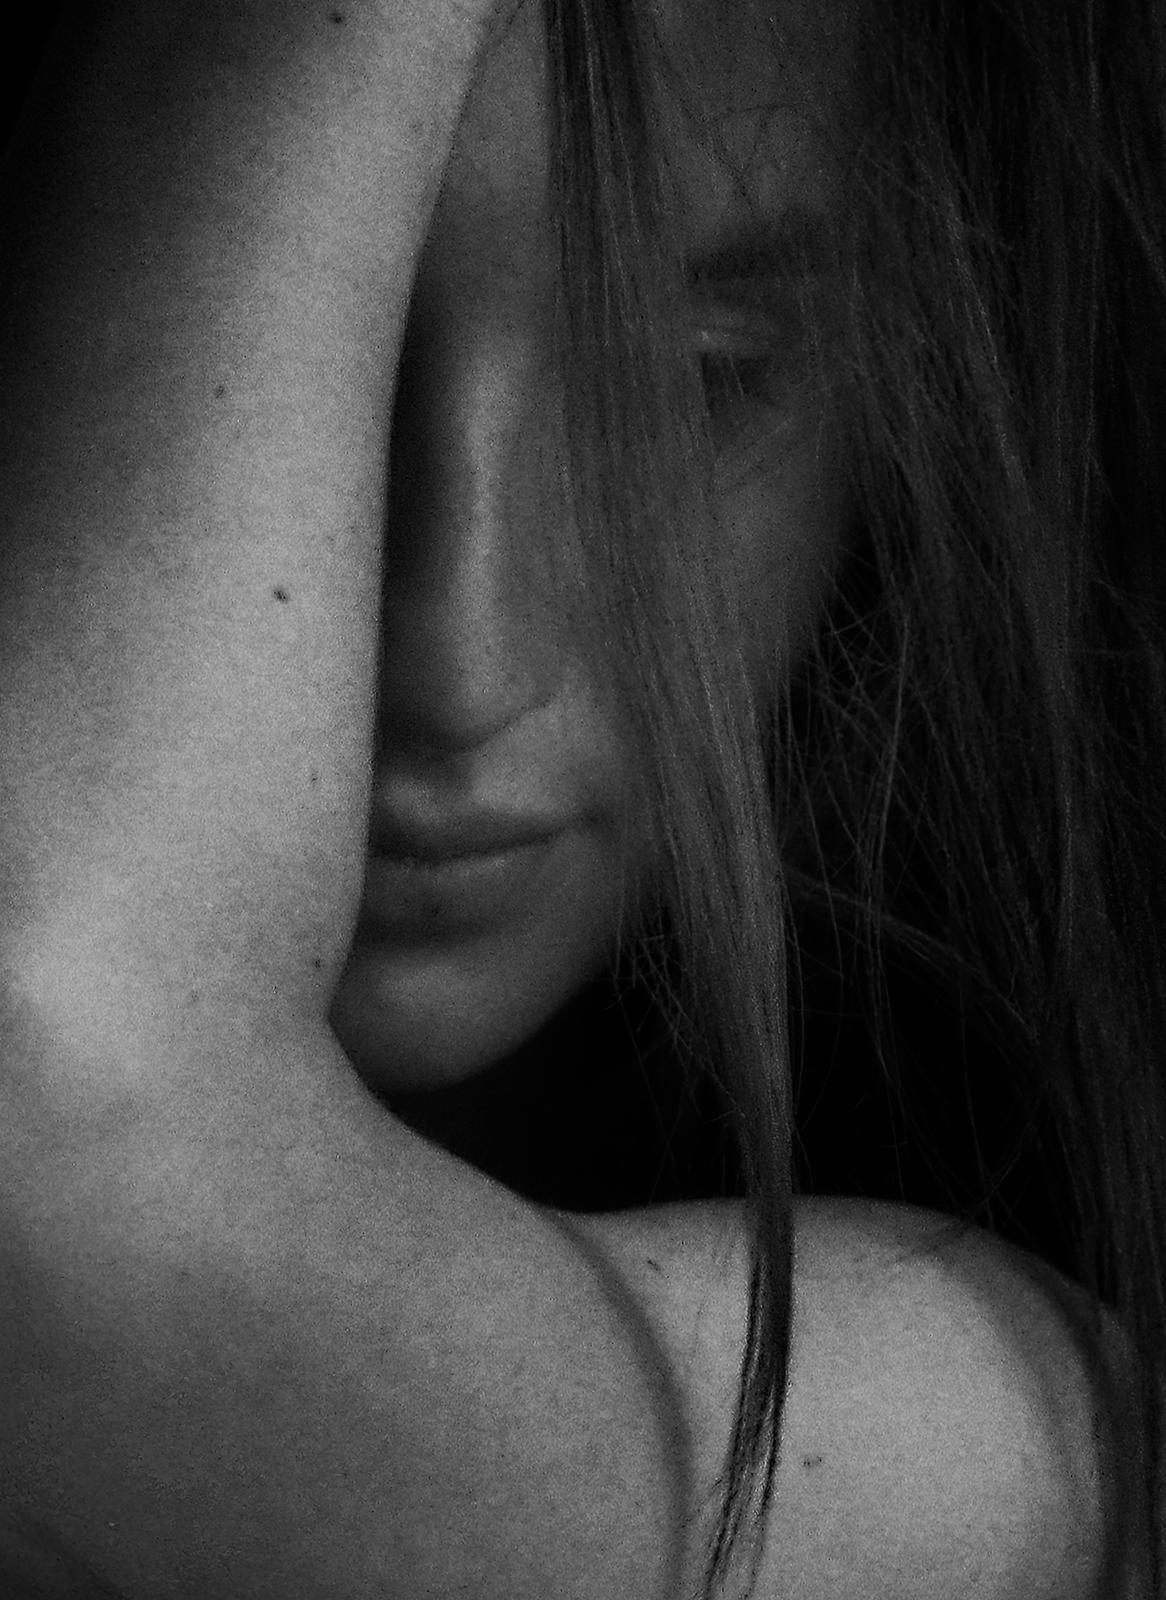 Impression de nu en édition limitée signée Sophie, photo en noir et blanc, surdimensionnée, contemporaine - Photograph de Ian Sanderson